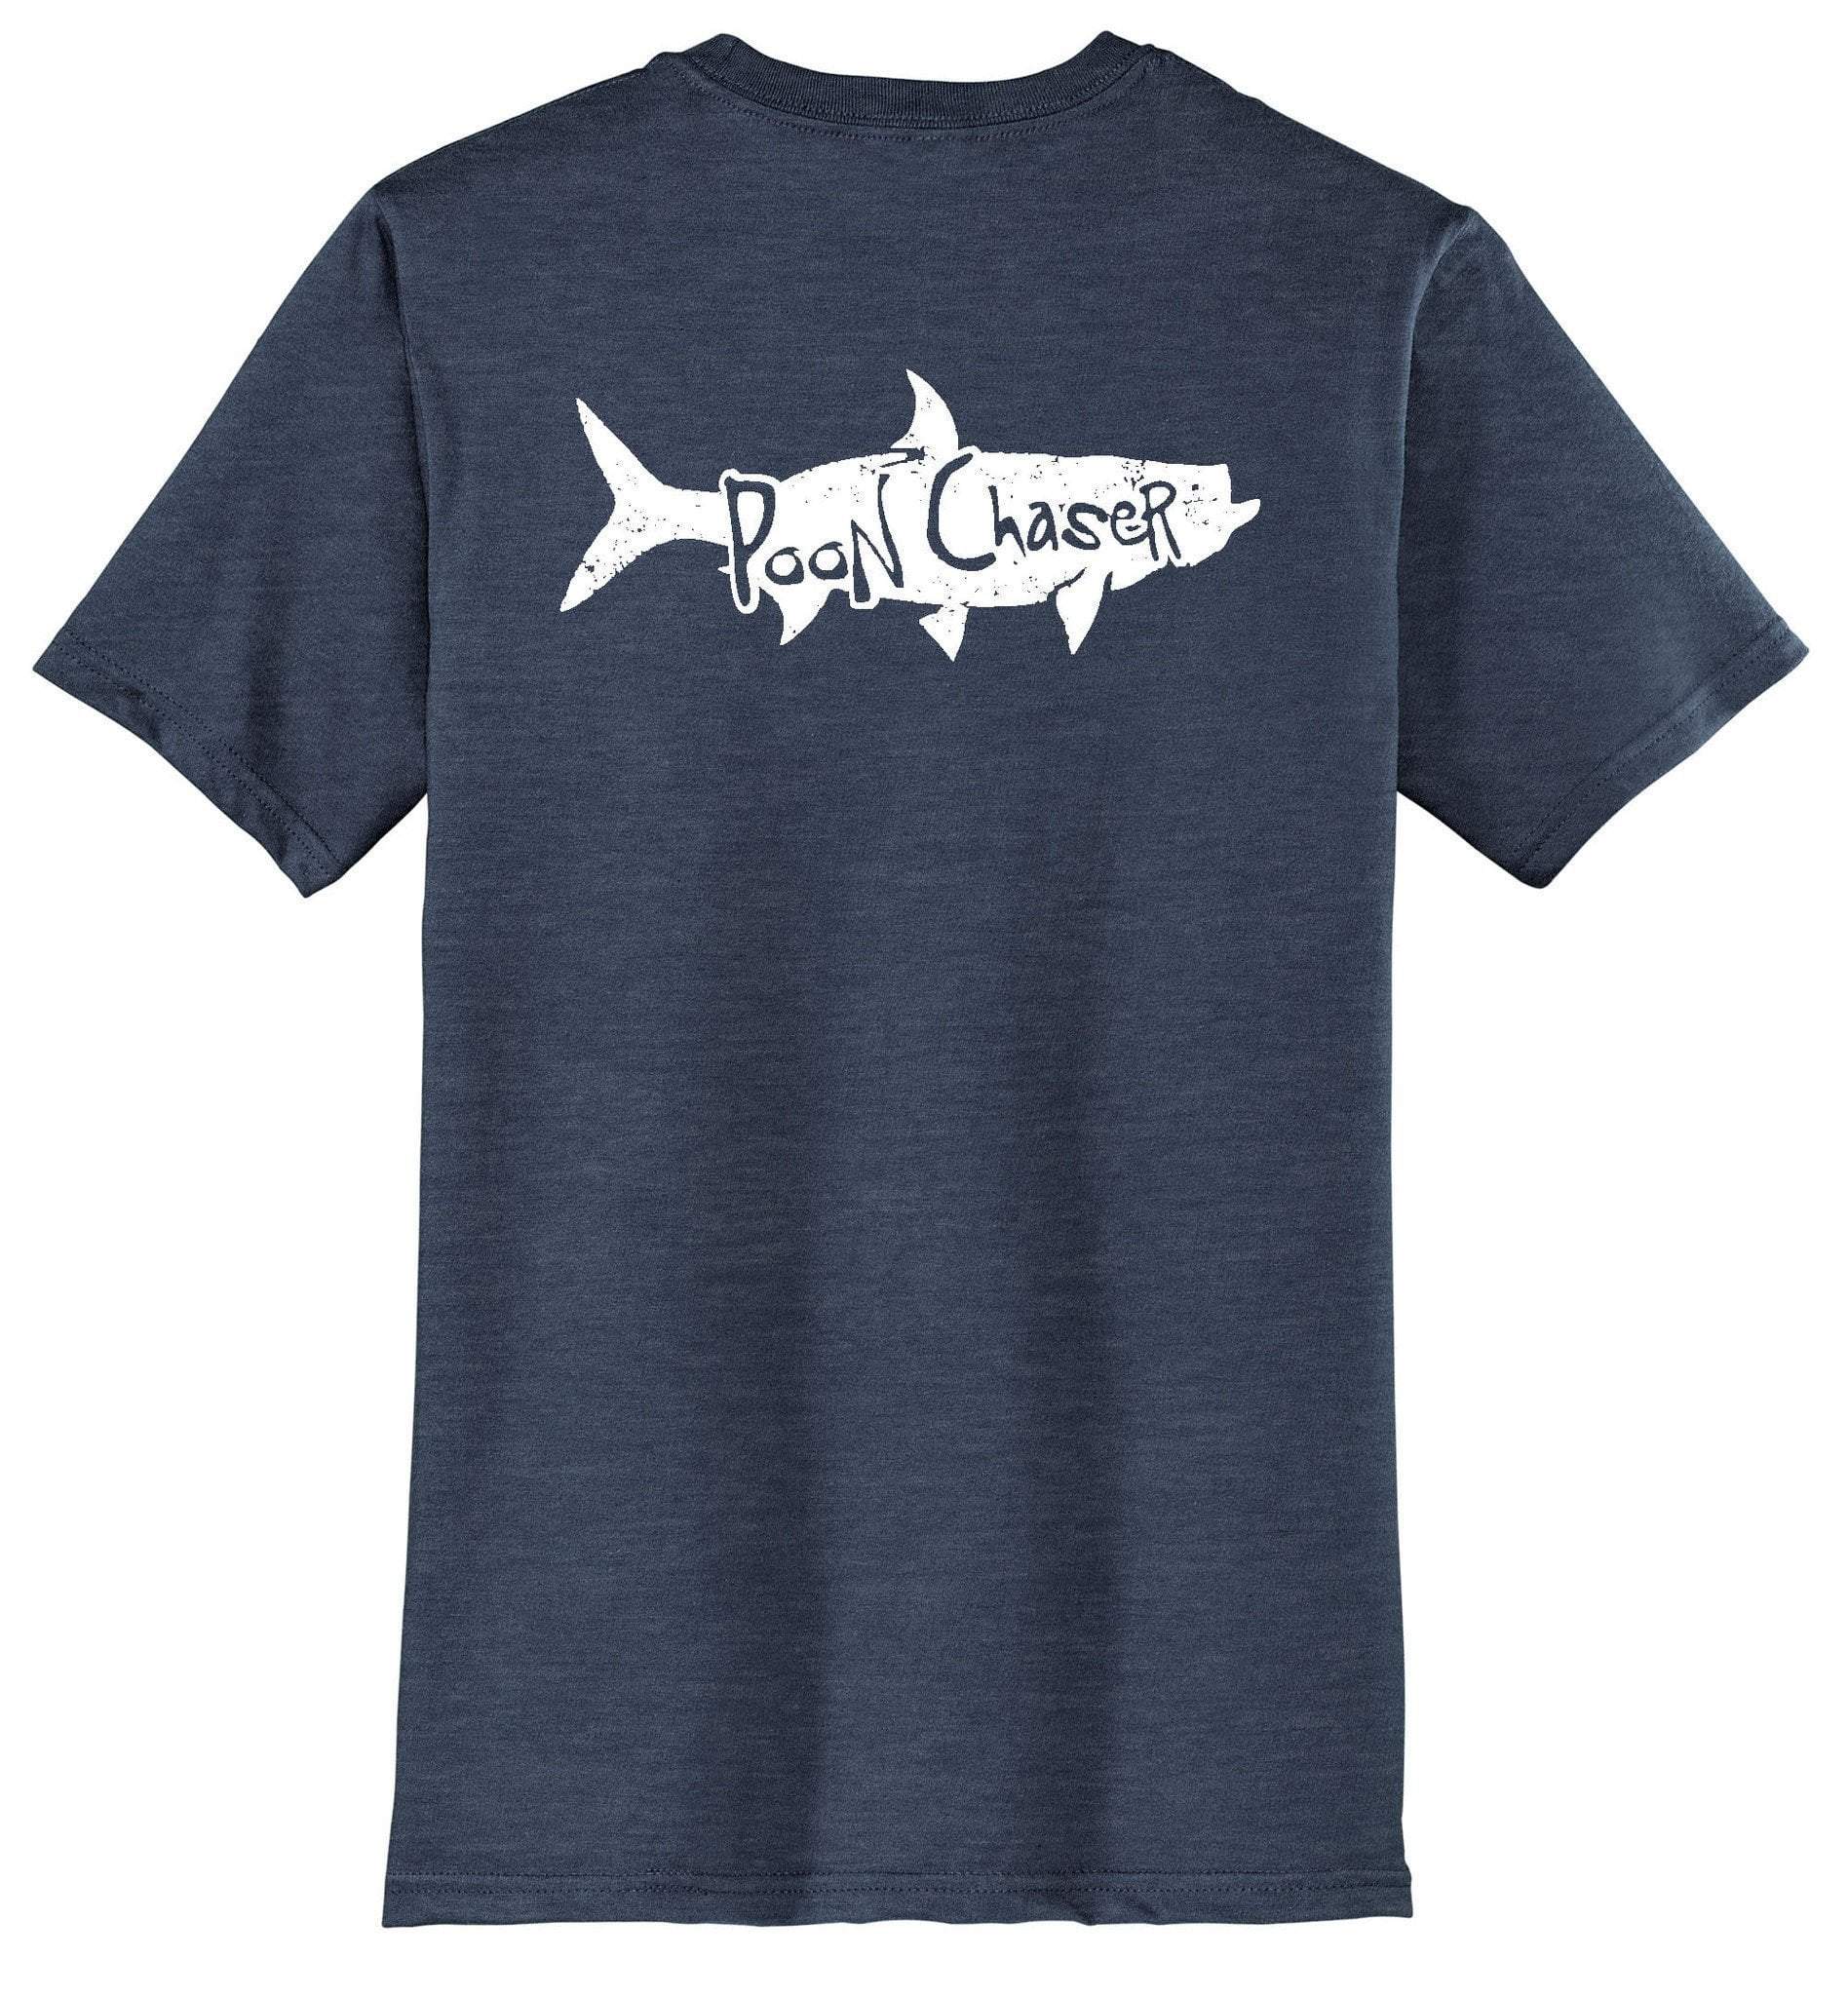 Tarpon Logo - Details about Tarpon Fishing Shirt with Poon Chaser Tarpon Logo Reel Fishy